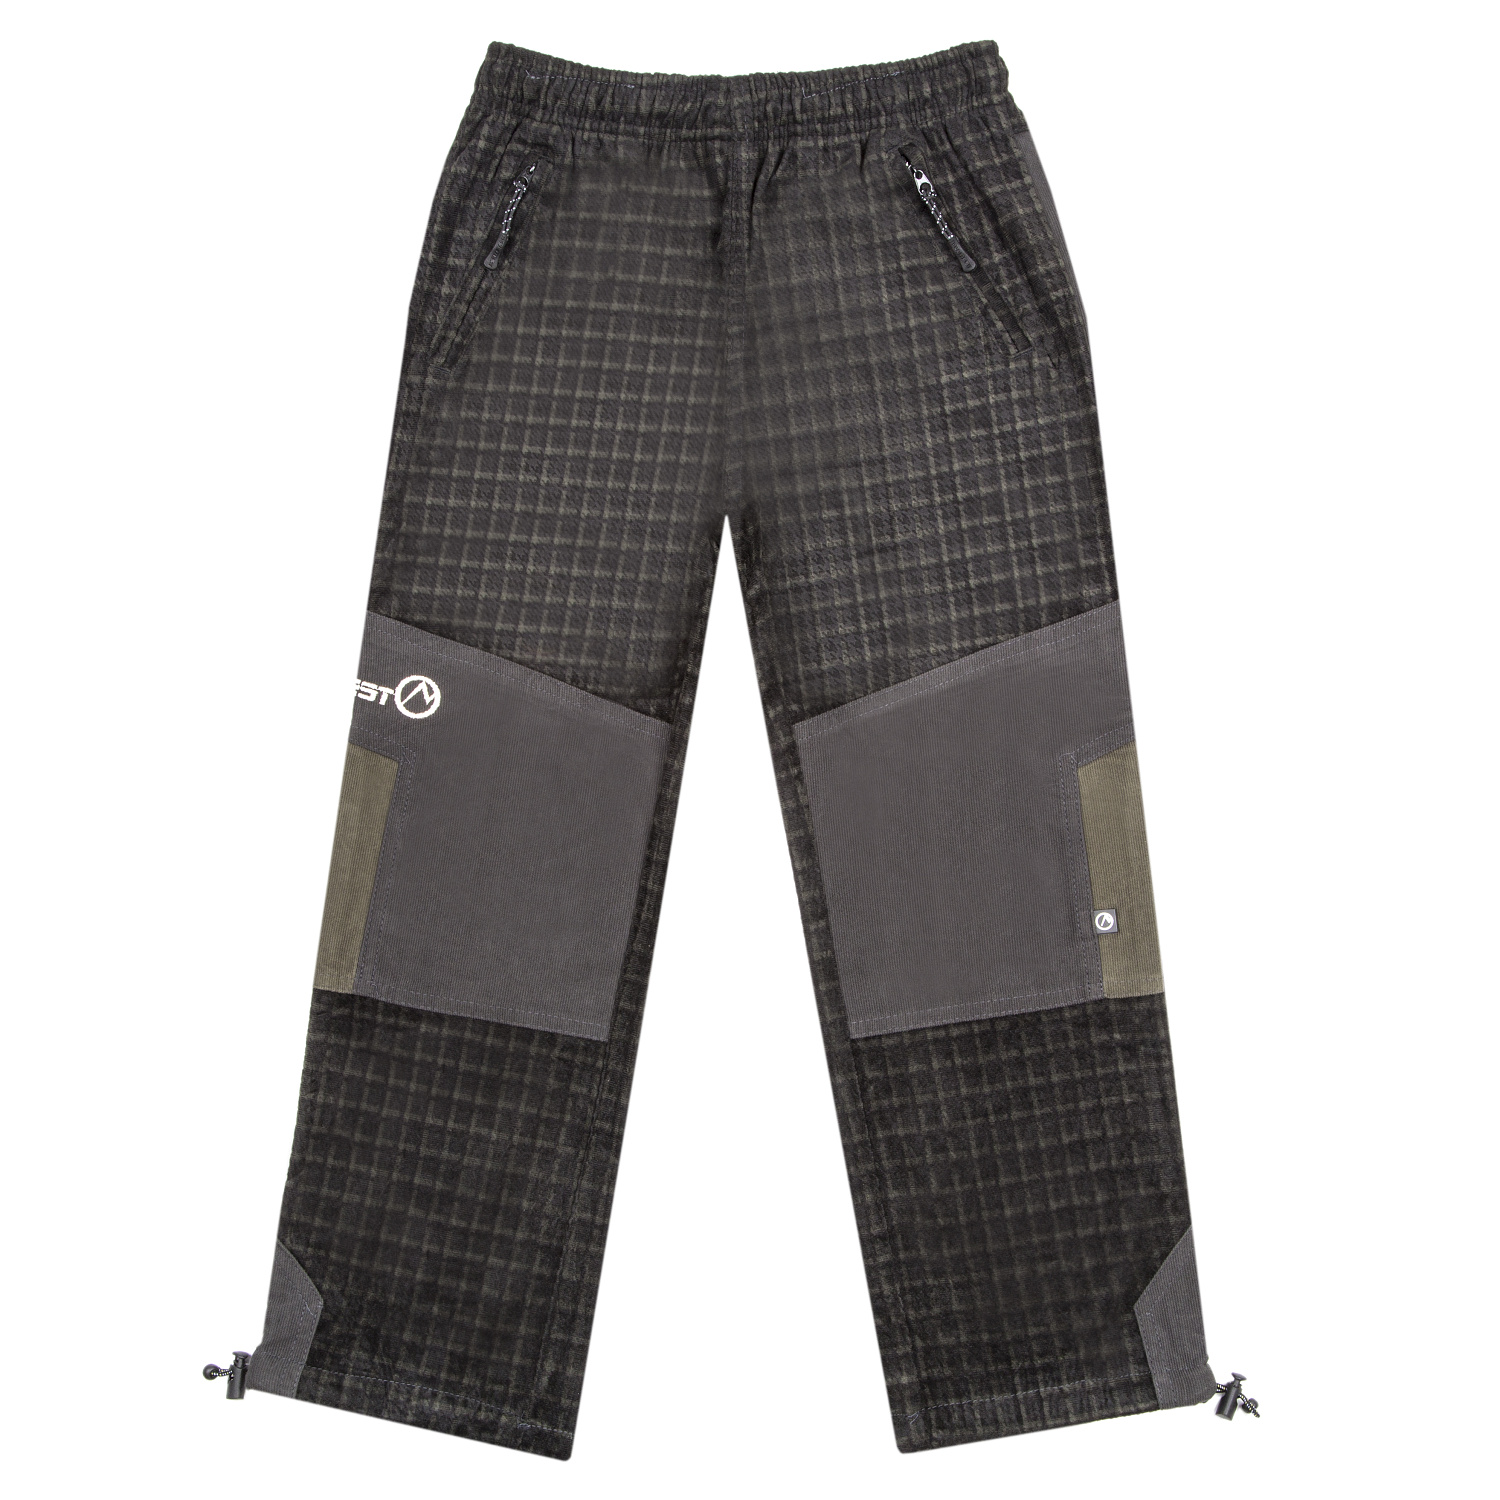 Chlapecké outdoorové kalhoty - NEVEREST F-921cc, hnědá Barva: Hnědá, Velikost: 104